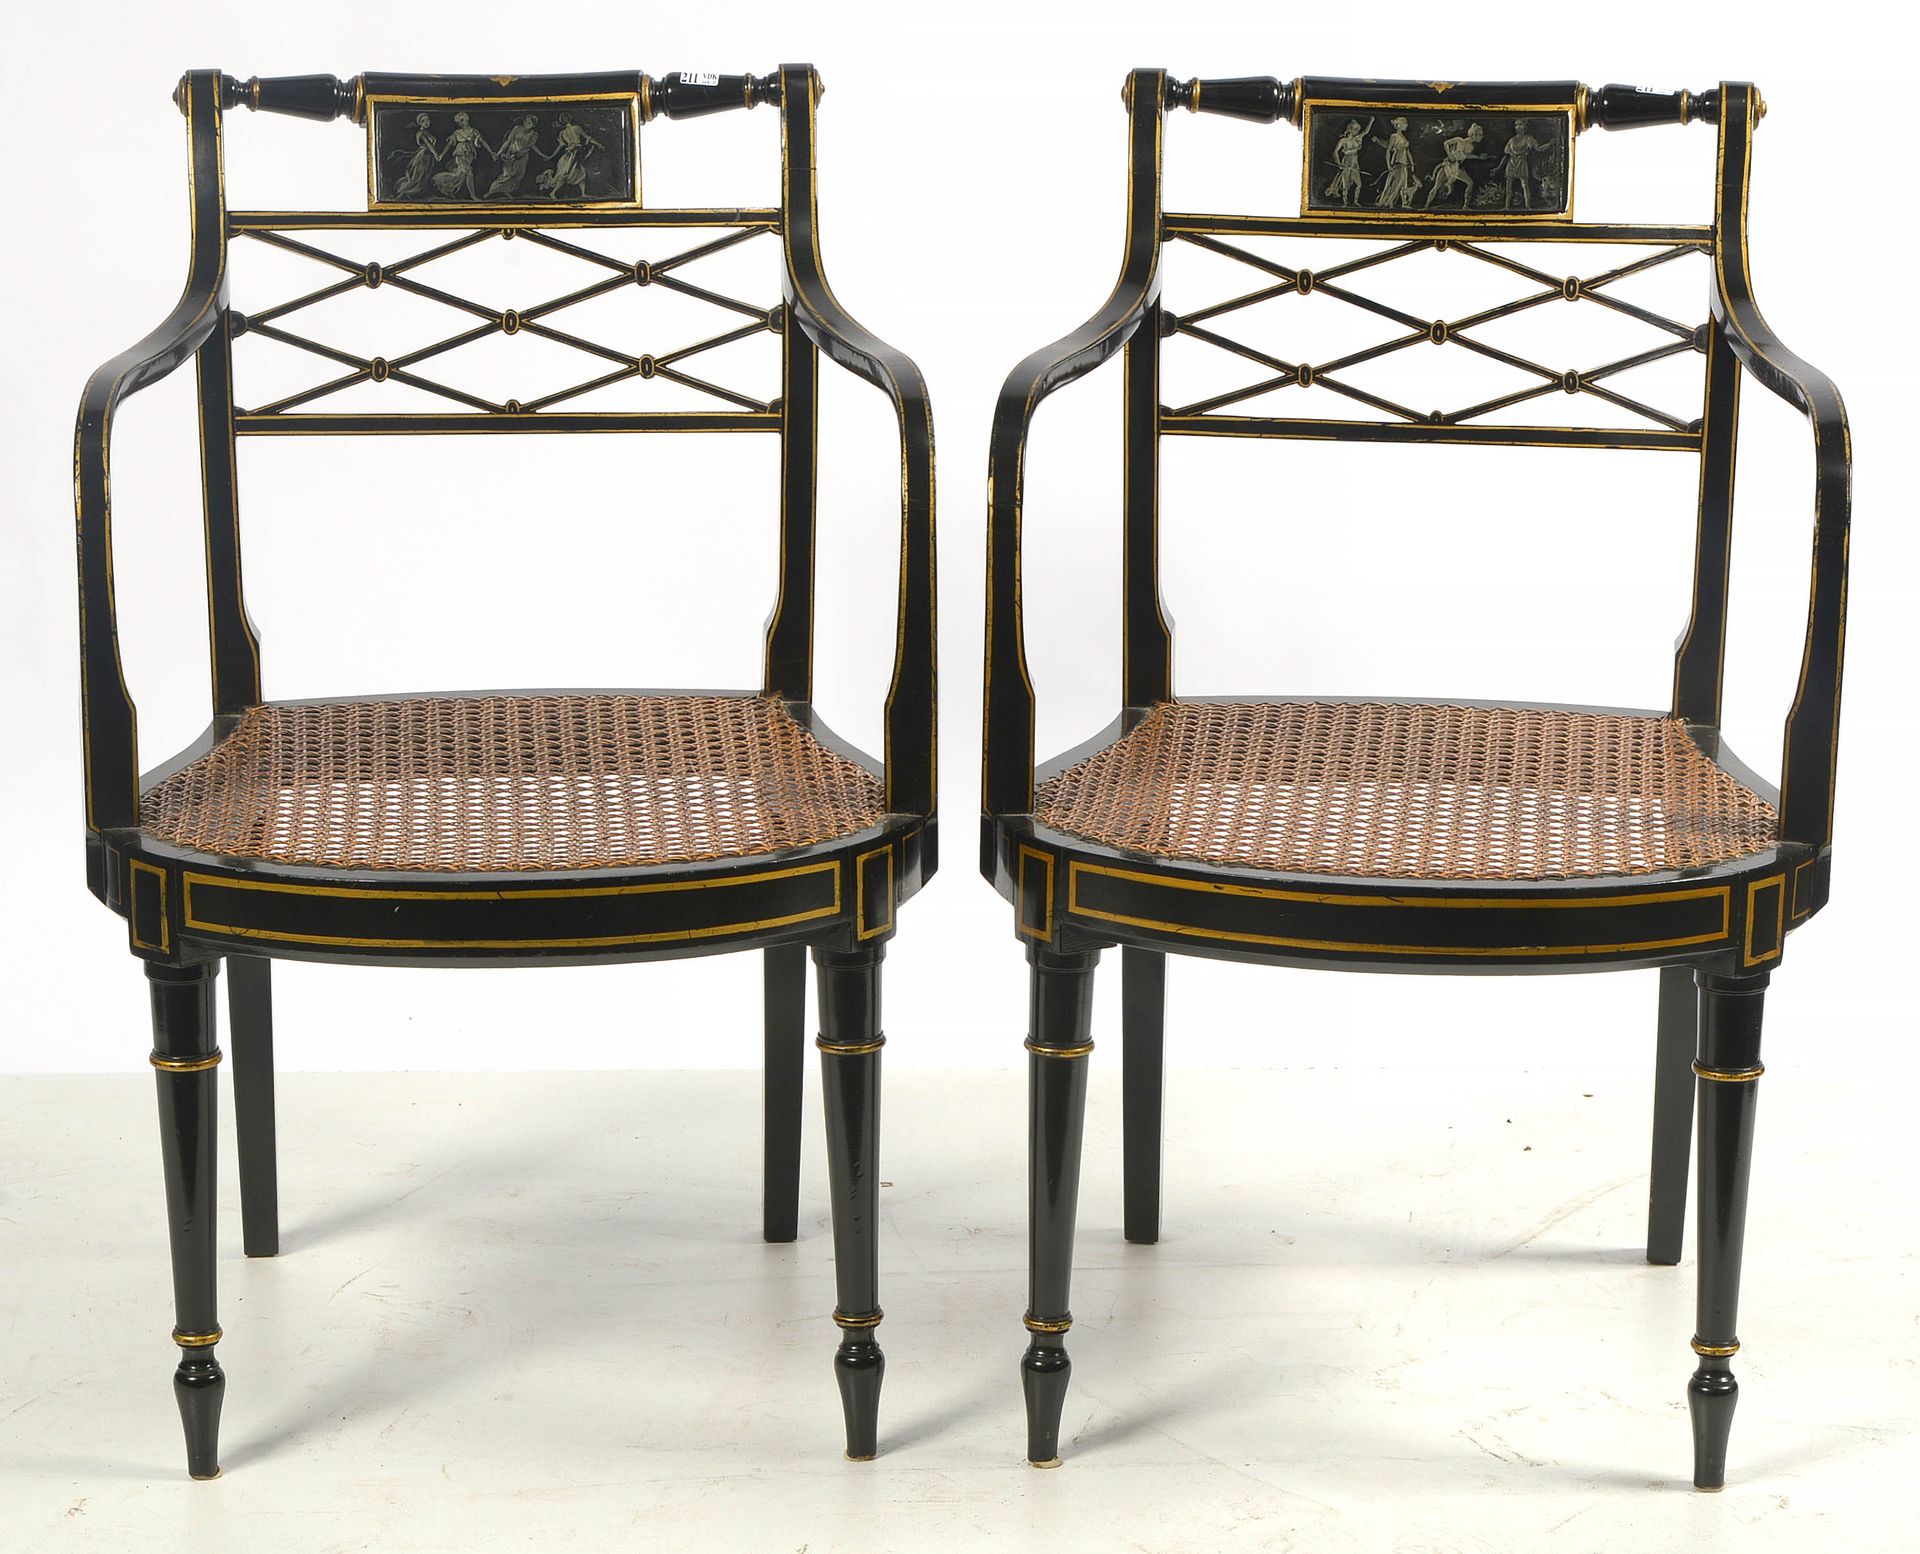 Null 一对扶手椅，"Crossbones "椅背，木雕，黑色和金色漆面，装饰有 "神话场景"，带有藤条的座椅。英文作品。年代：19世纪。